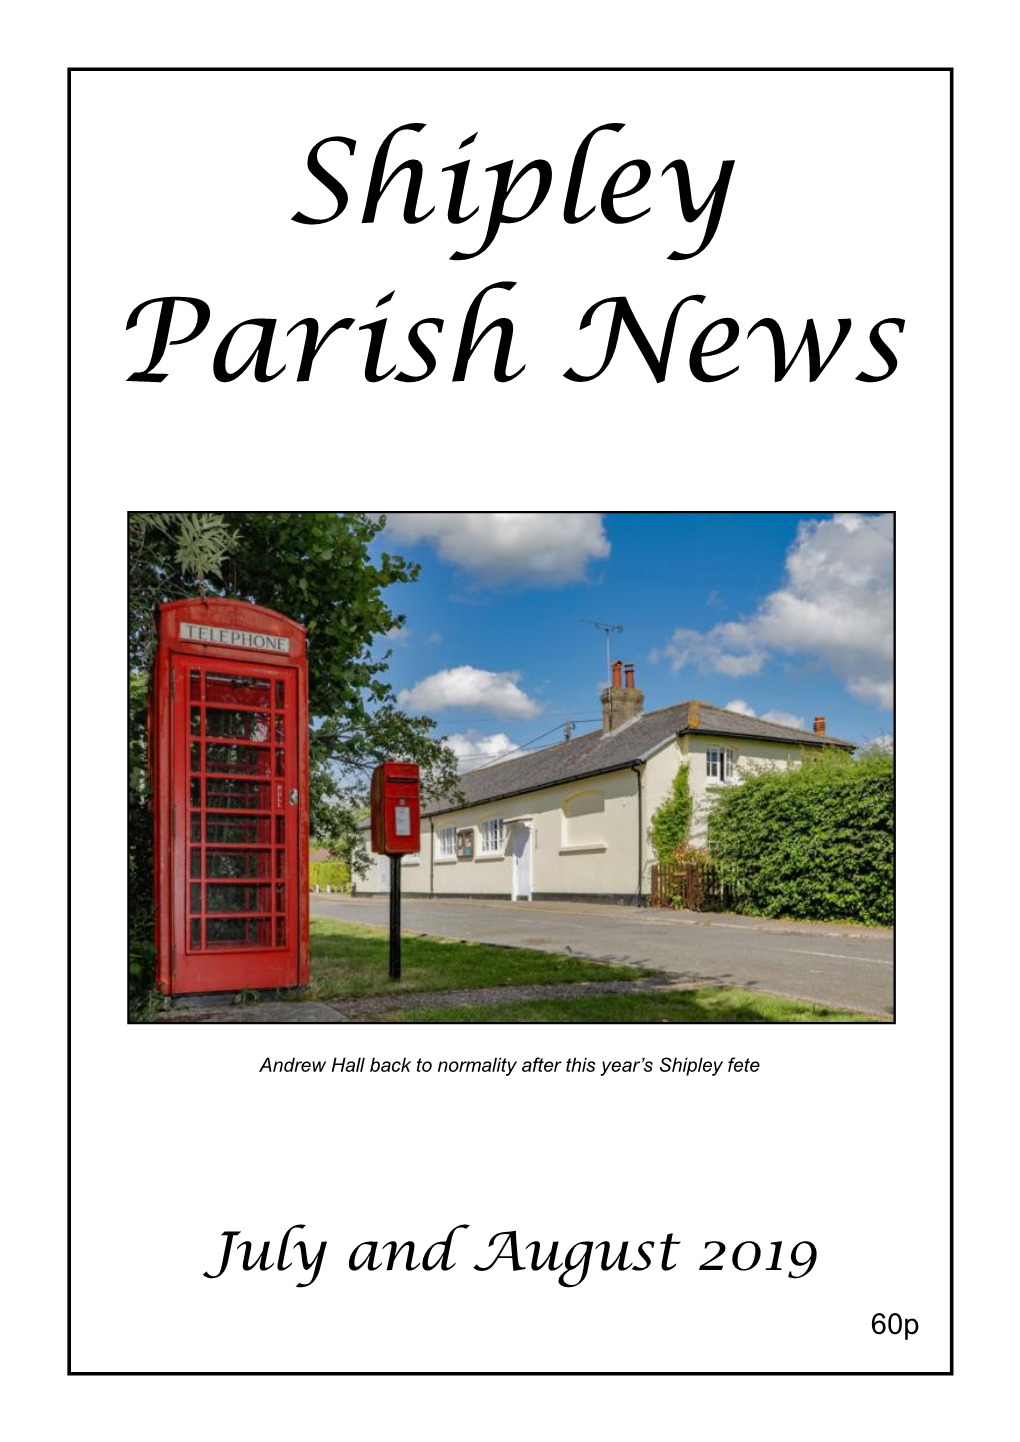 Shipley Parish News